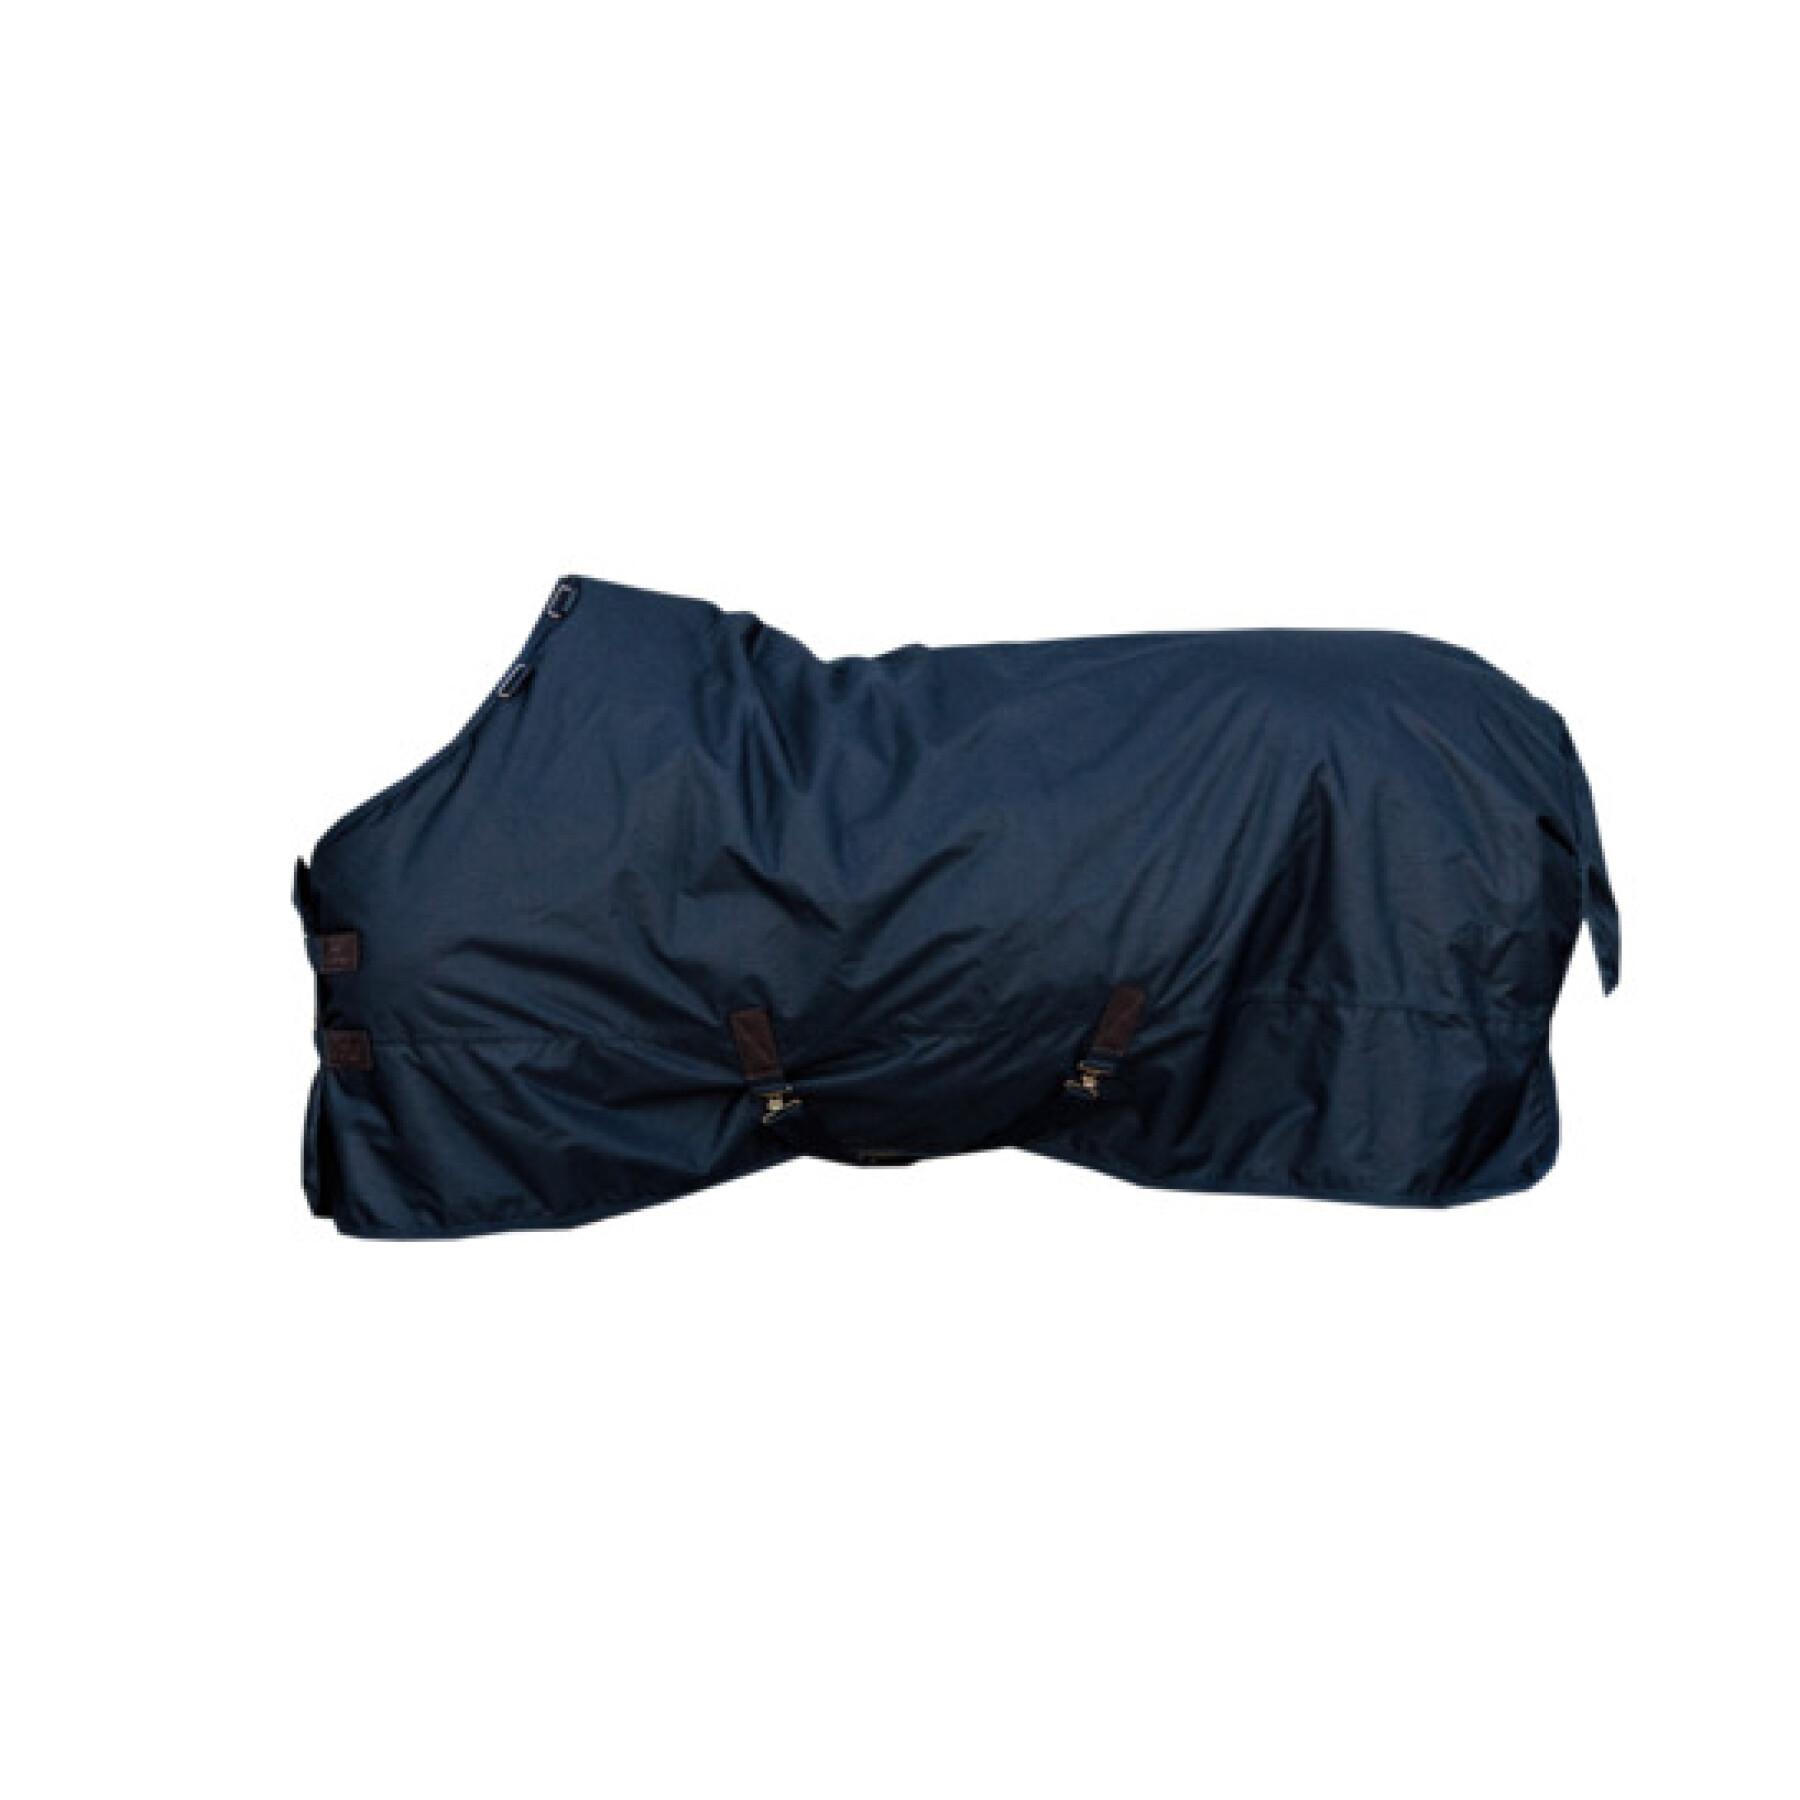 Waterproof outdoor horse blanket Kentucky All weather - Classic 150 g